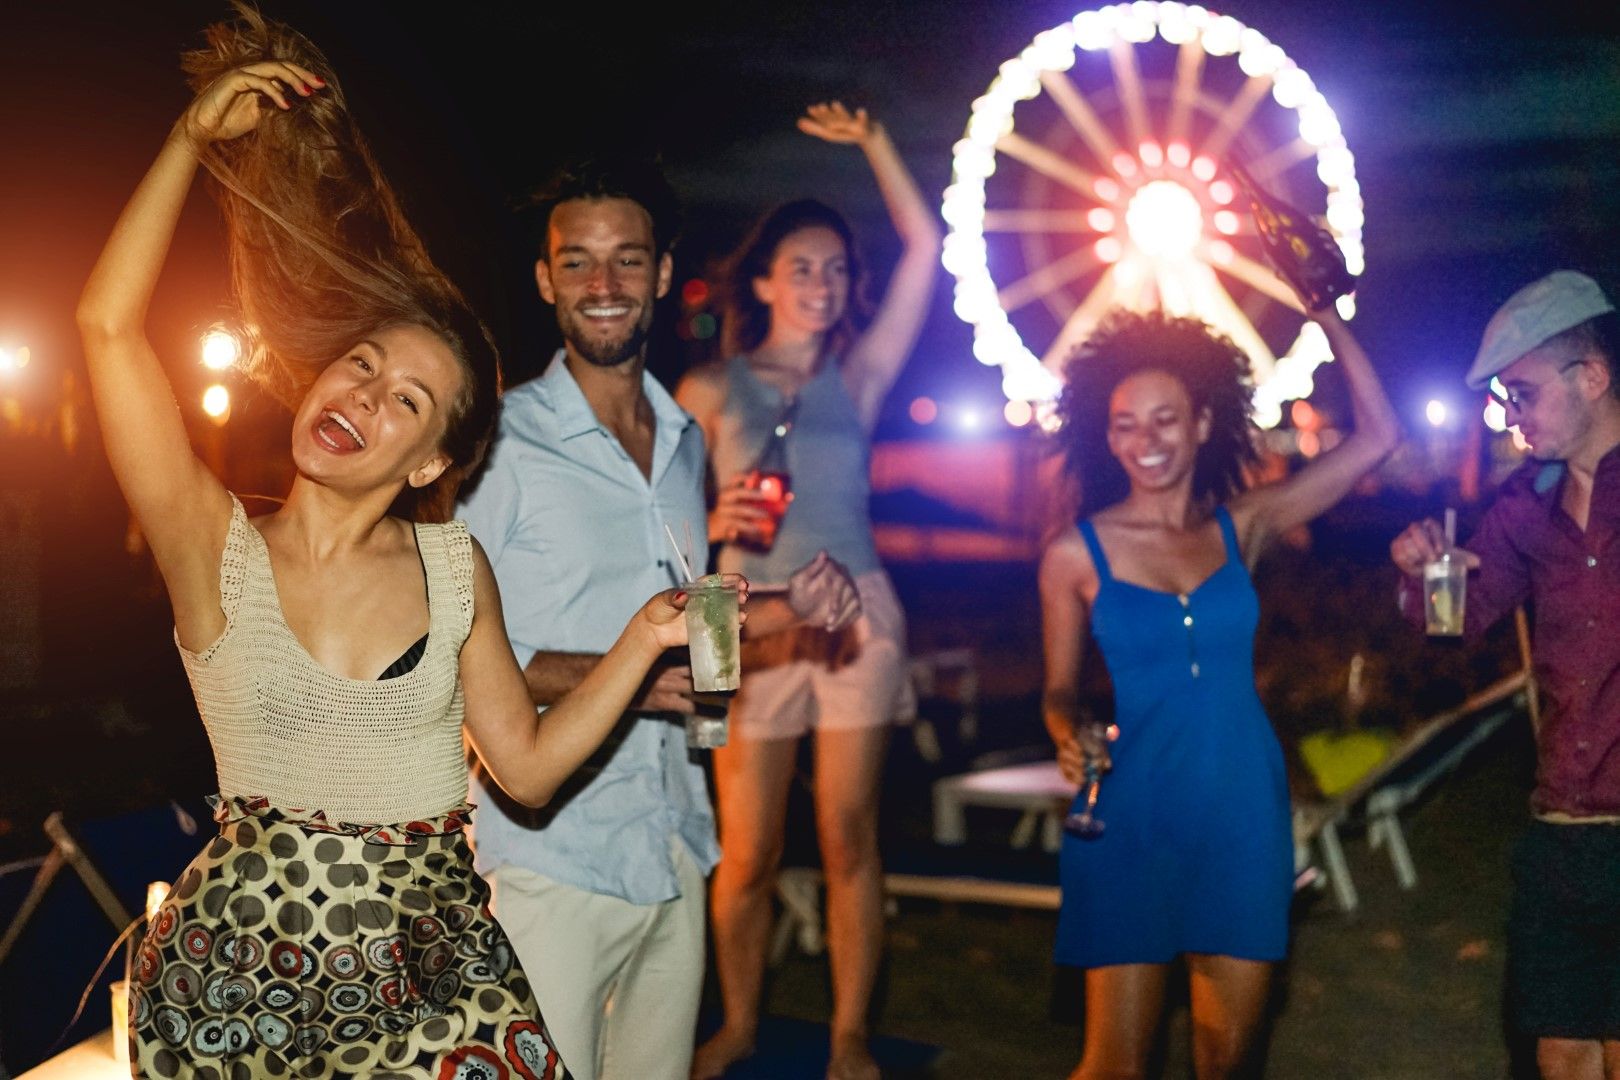 Забраняват се безлимитните напитки в баровете, бар туровете, промоциите тип "happy hour", както и продажбите на алкохол в магазините нощем